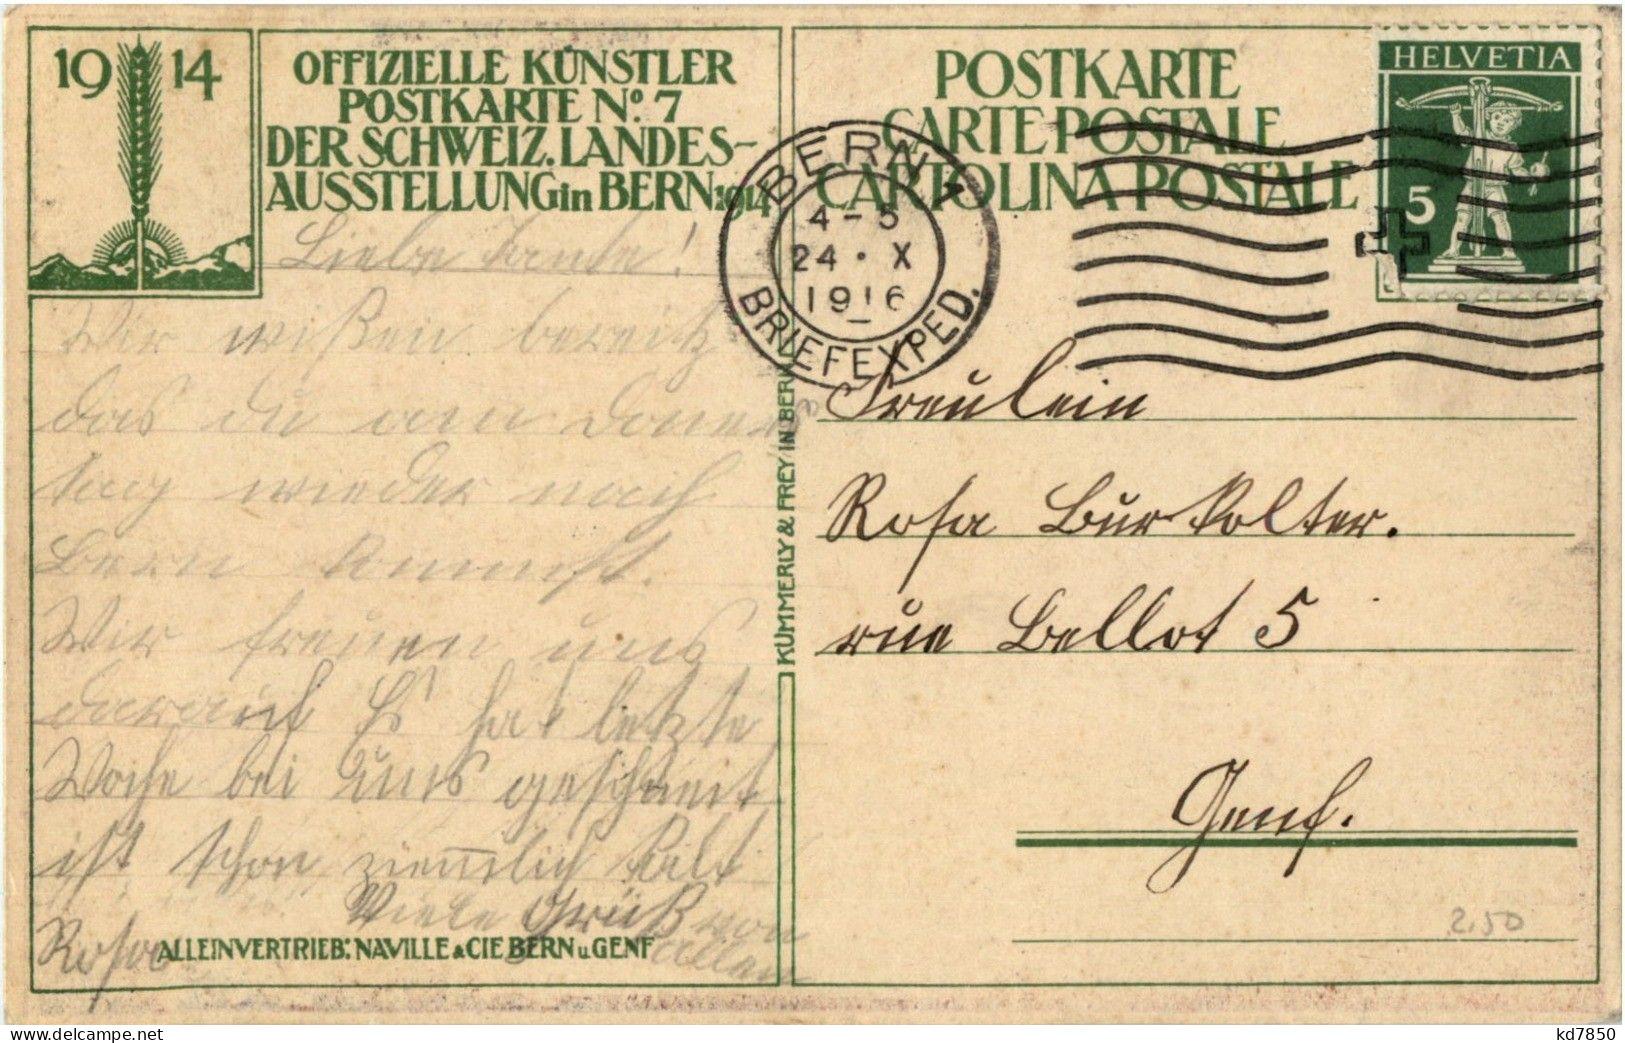 Bern - Landesaussteluung 1914 - Bern